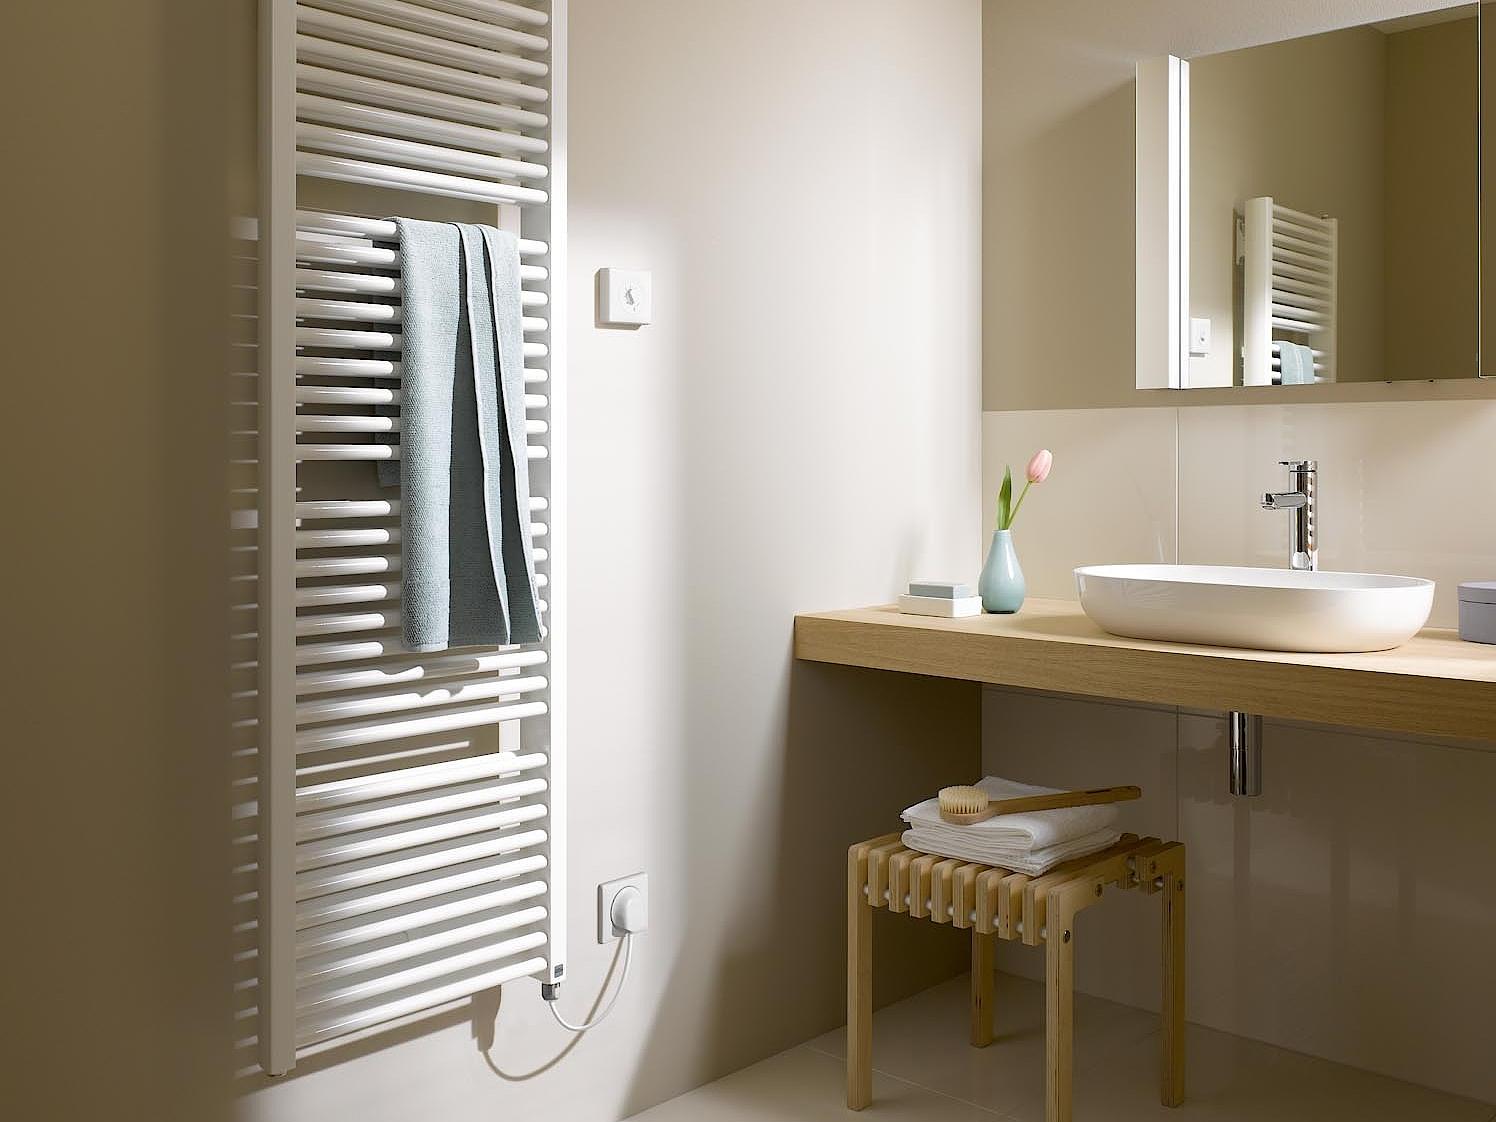 Grzejniki dekoracyjne i łazienkowe Kermi Duett są dostępne również jako grzejniki elektryczne.